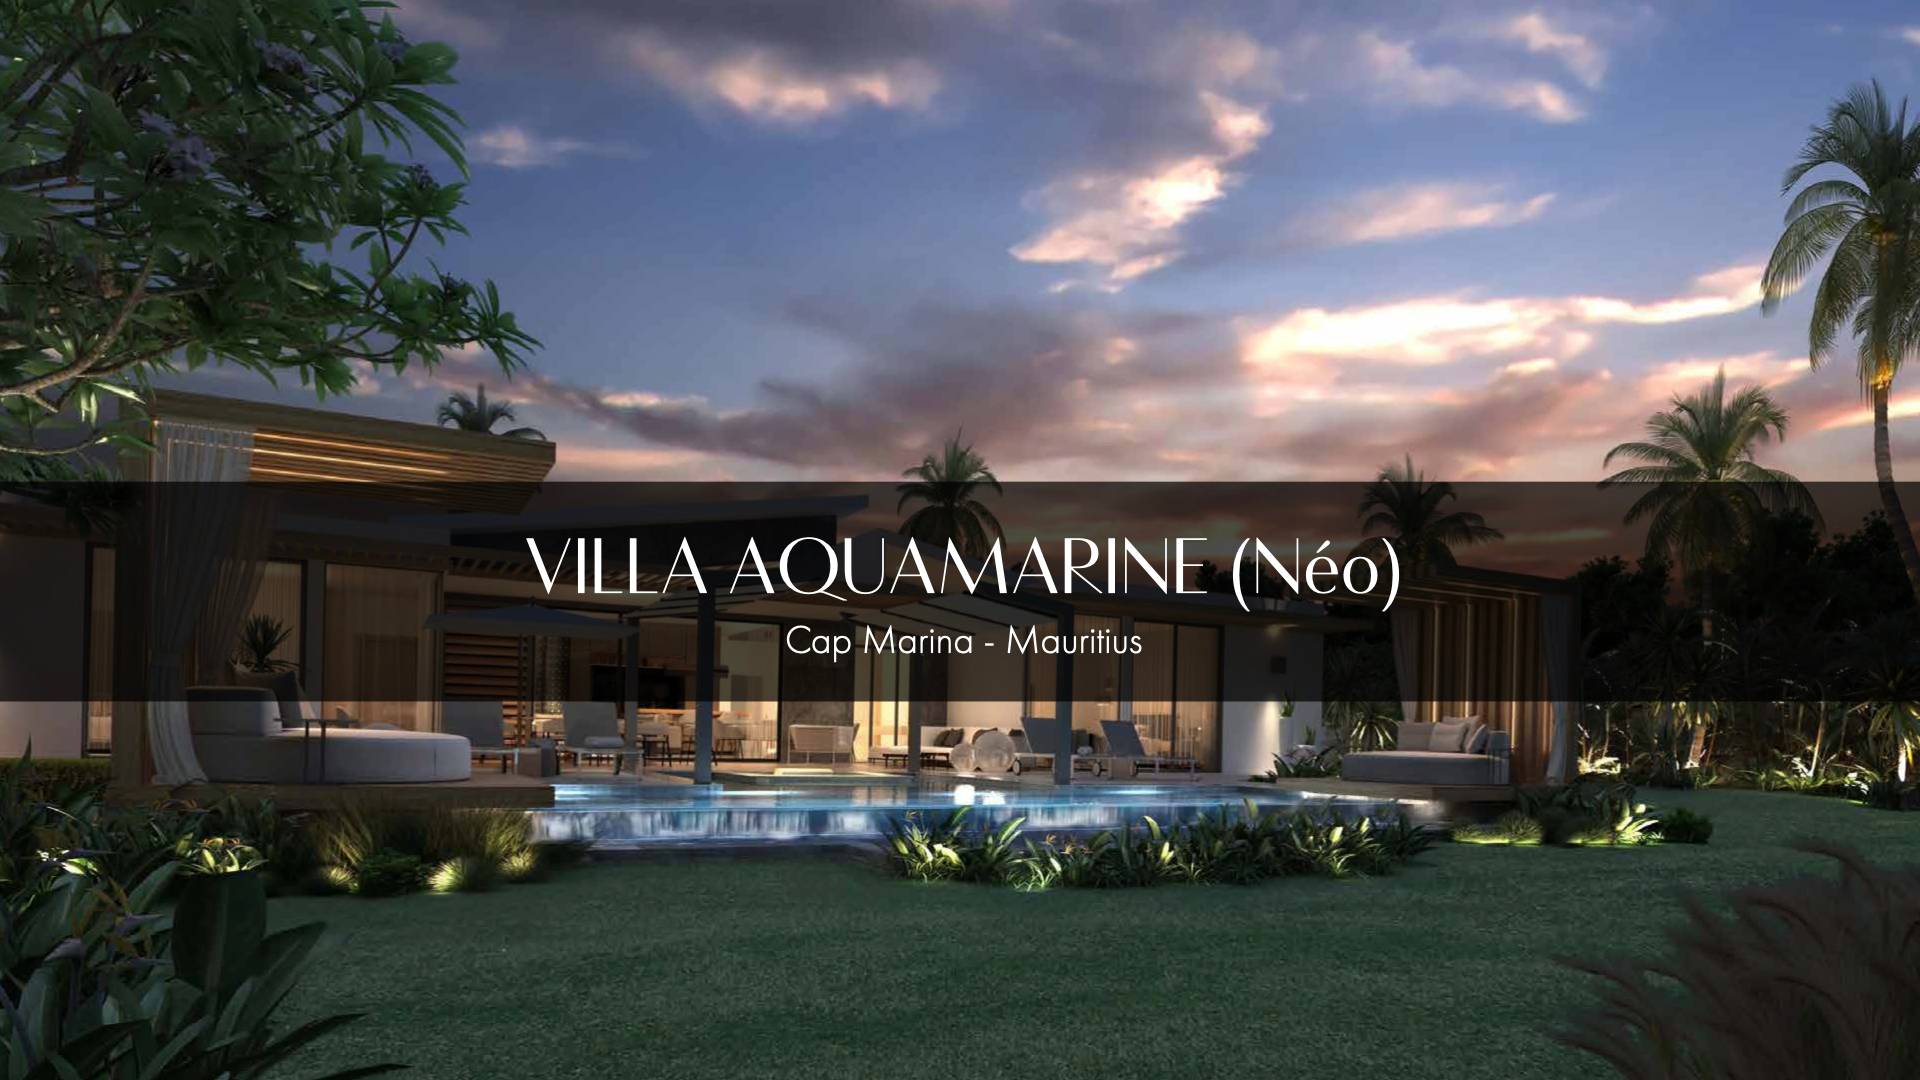 Aquamarine (Neo) Villa in Mauritius: Dive into Luxury - Limited Villas Remaining